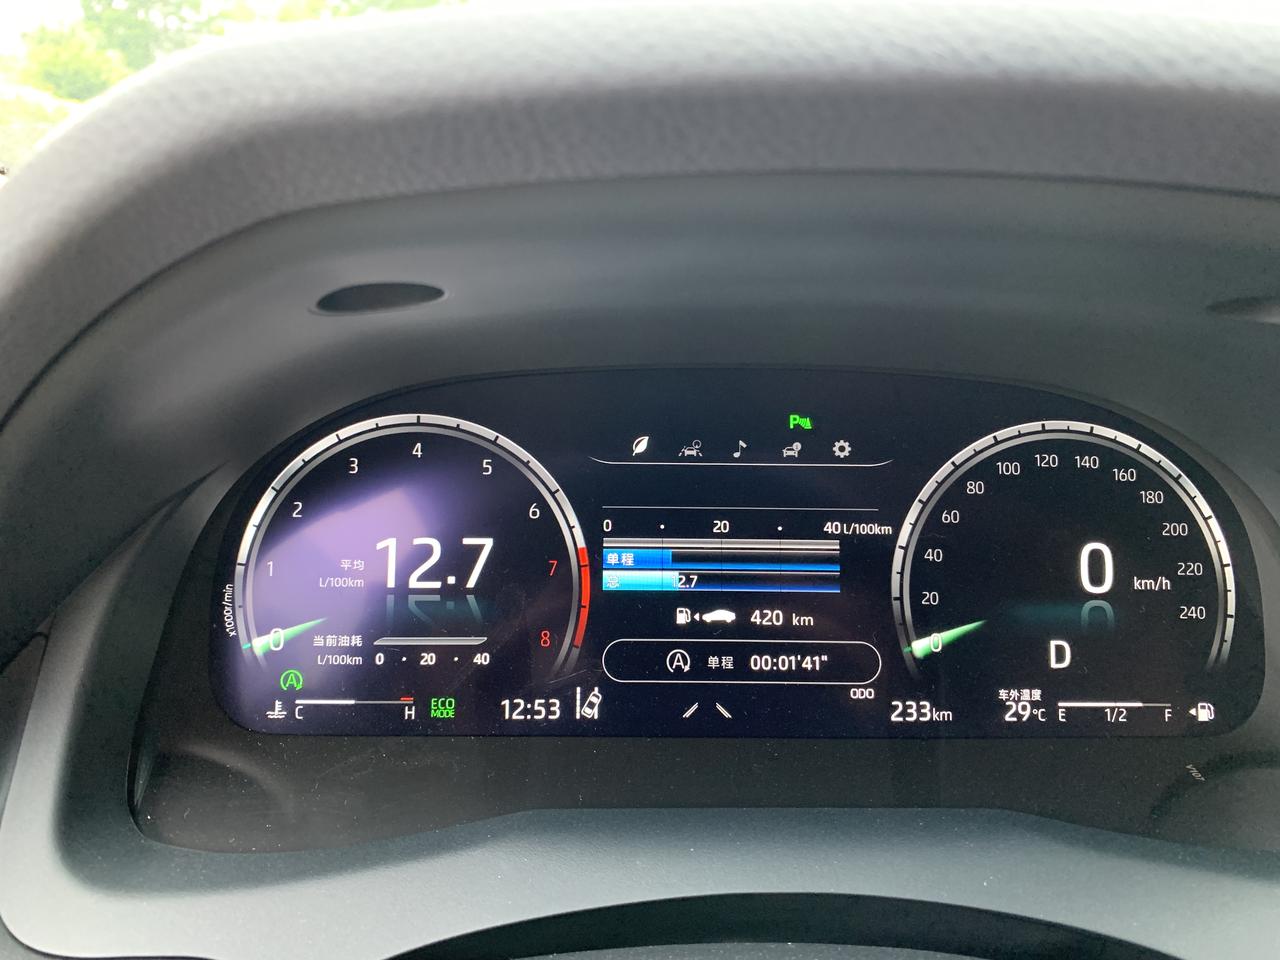 丰田凯美瑞 中控台显示时间比导航的快四小时，有这样的情况出现吗？的是B导航